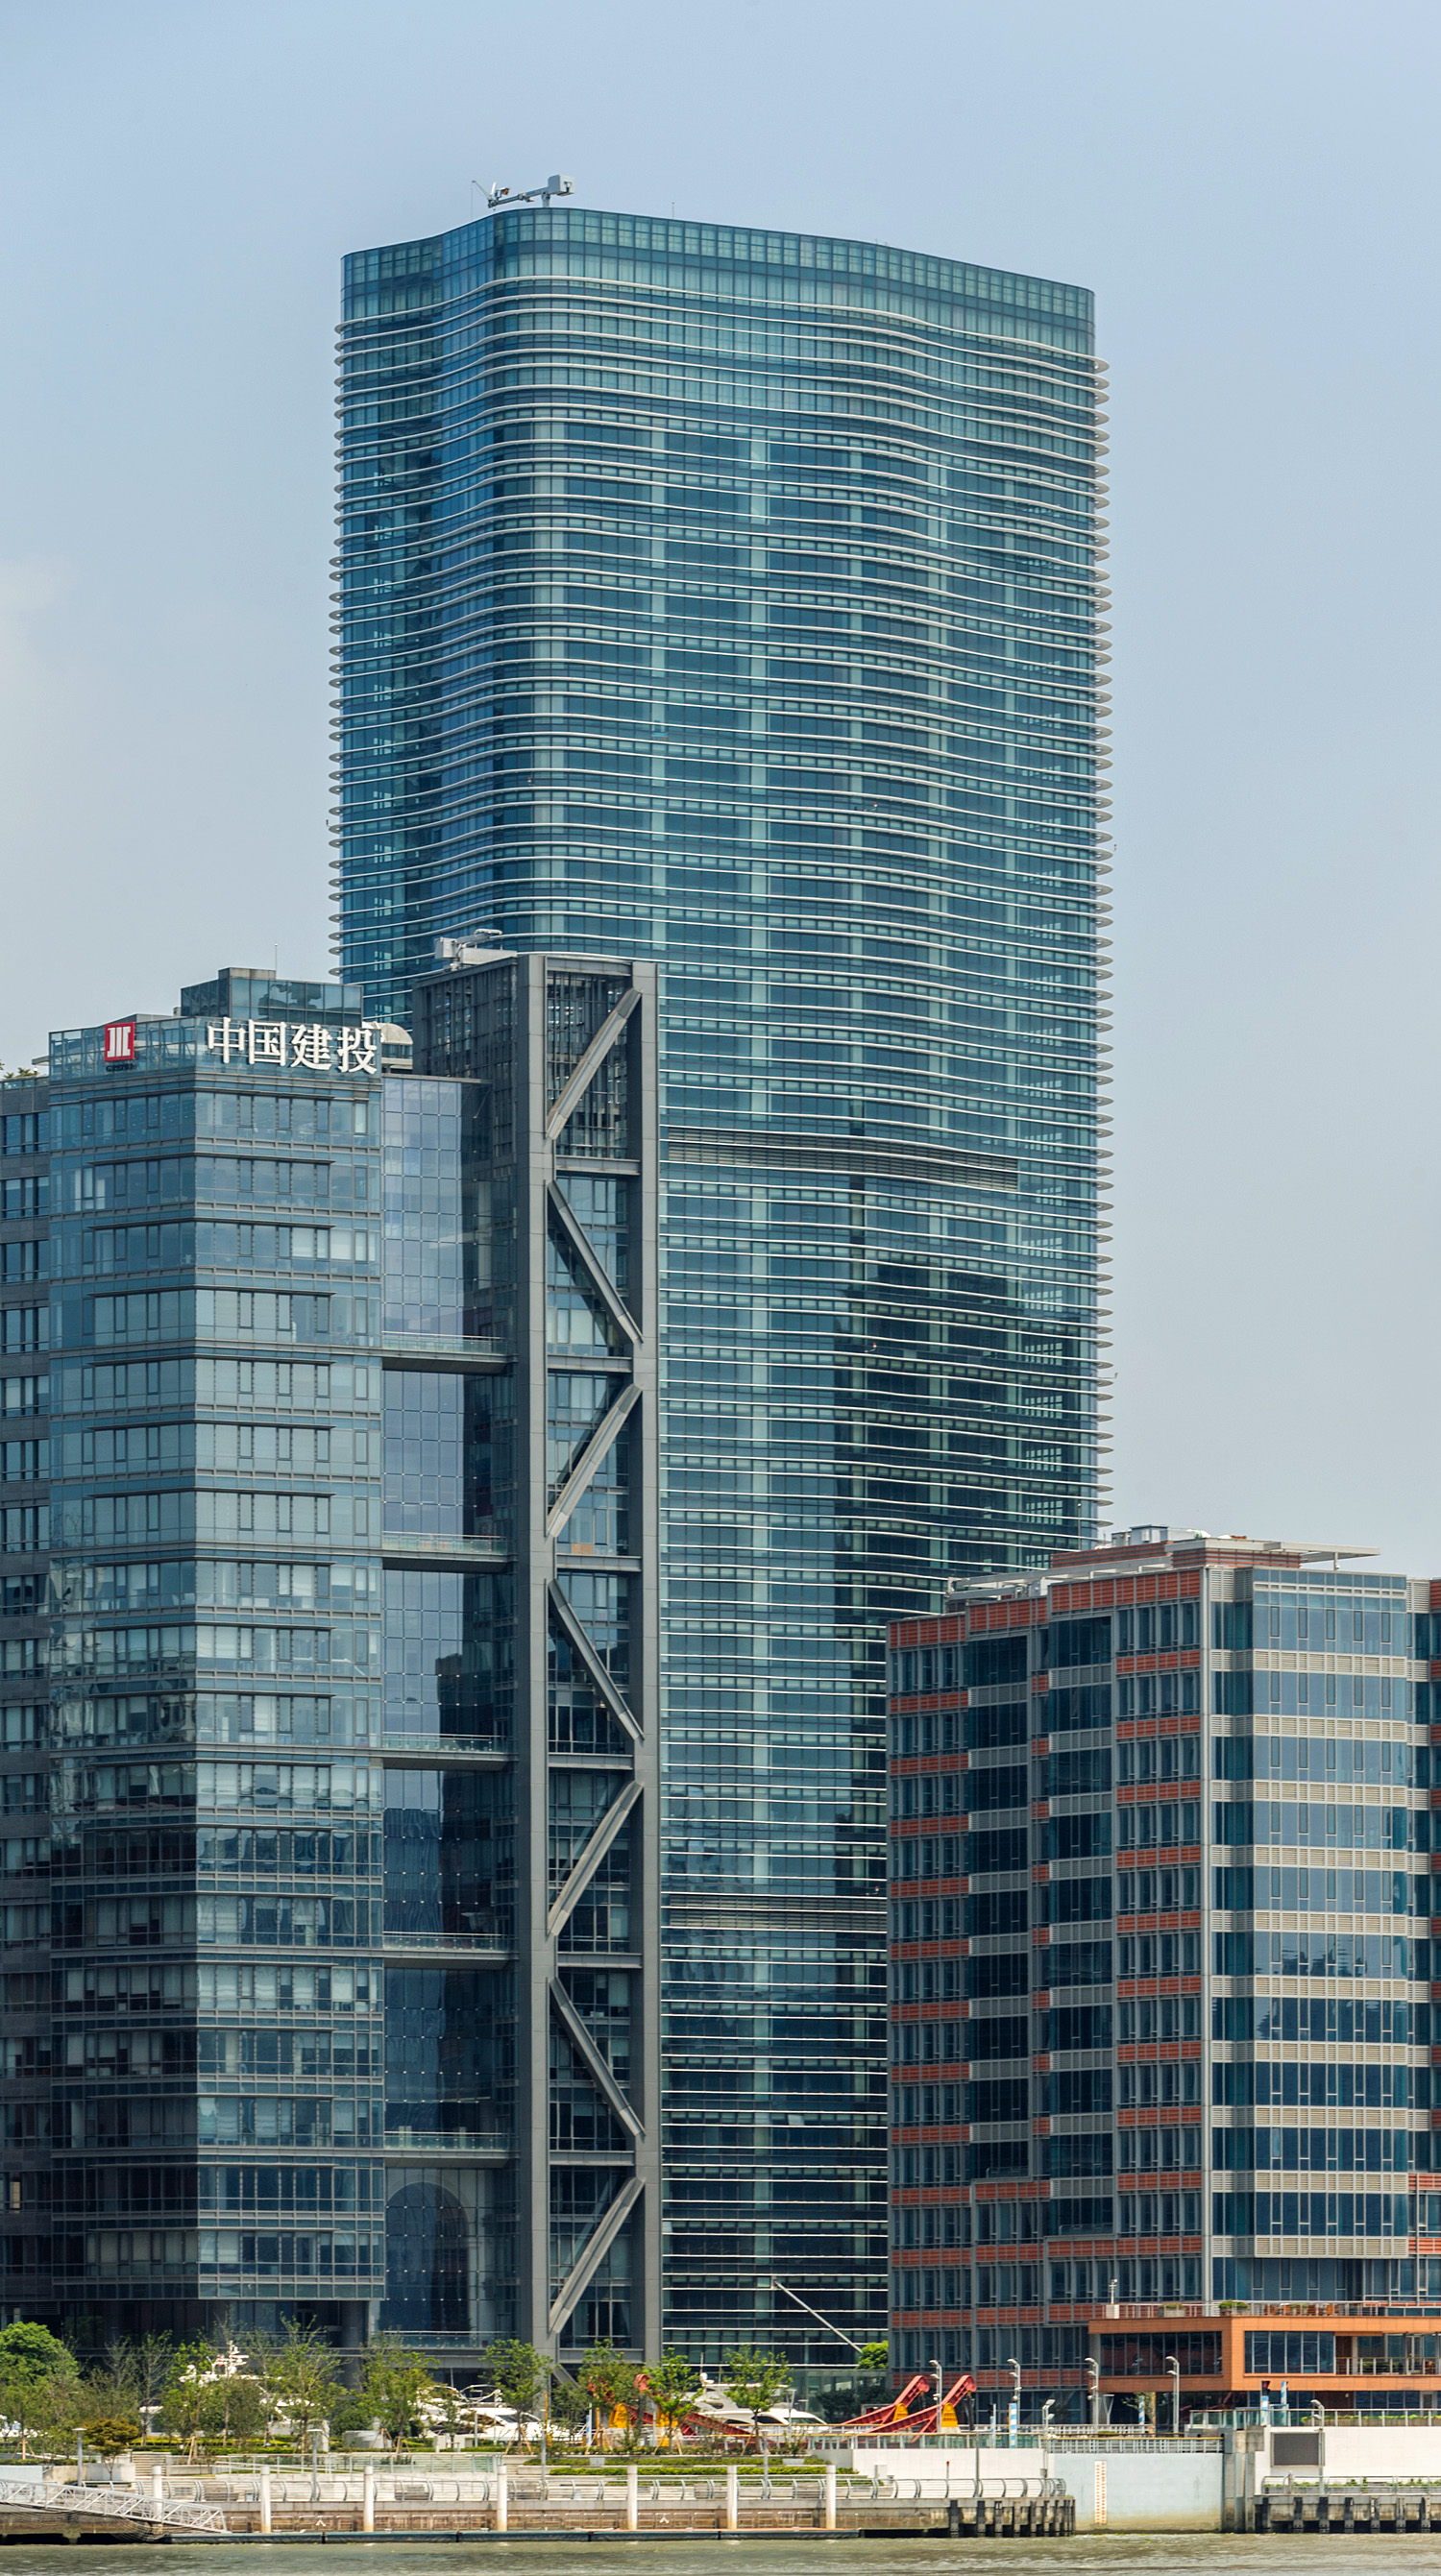 Pujiang International Finance Plaza, Shanghai - View across Huangpu River. © Mathias Beinling